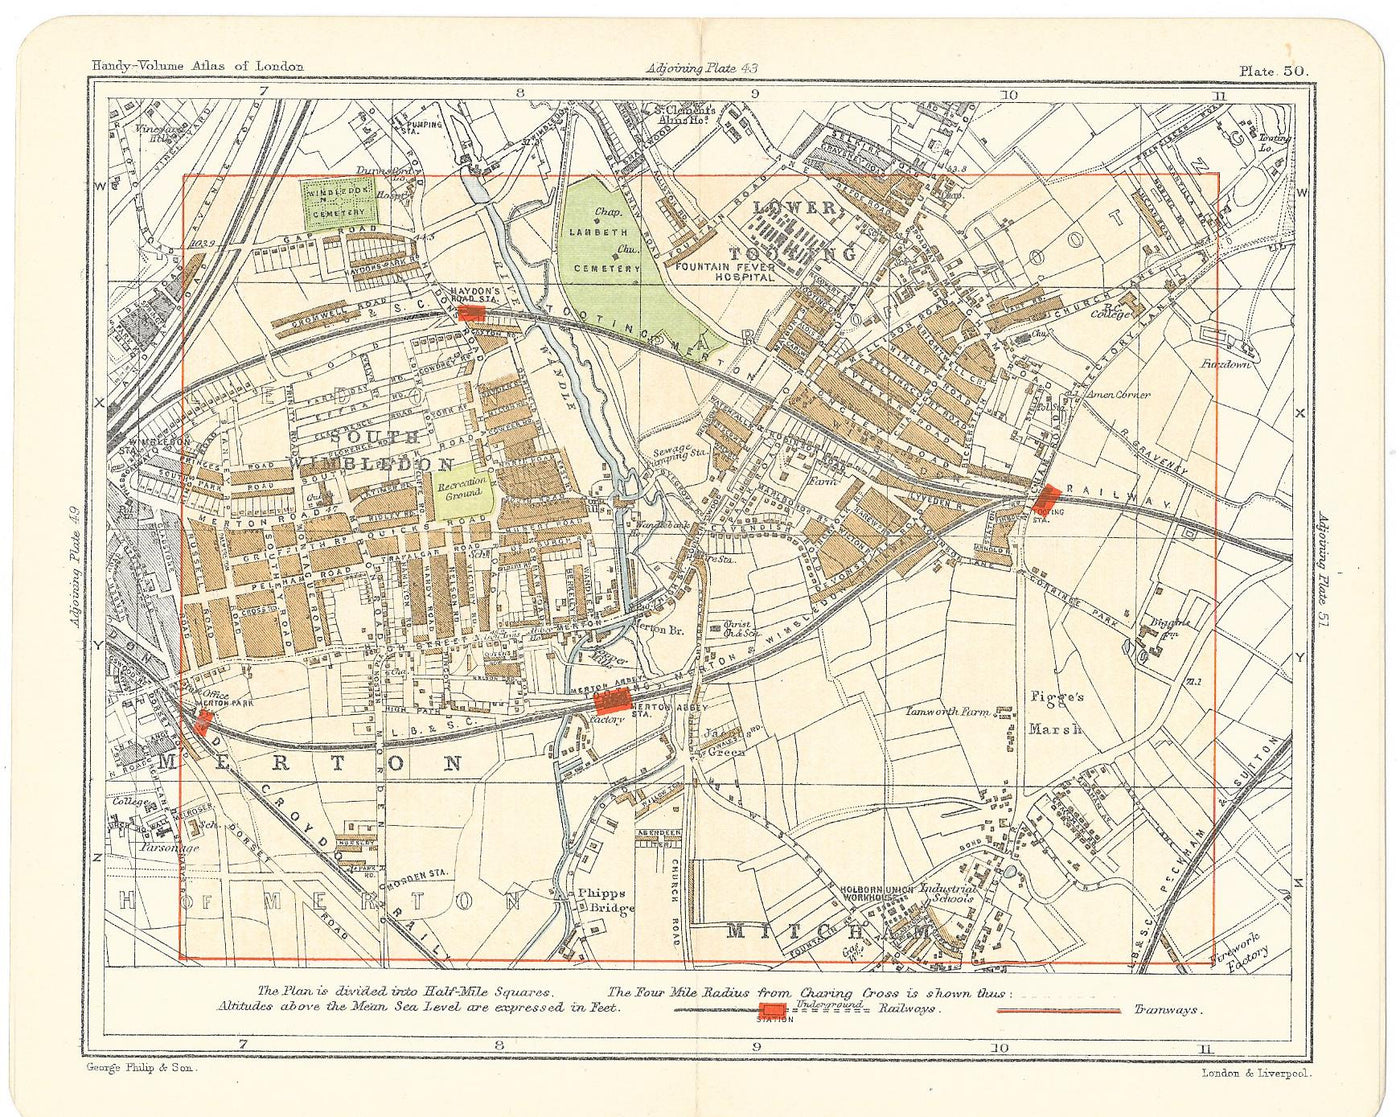 Streatham antique map 1902